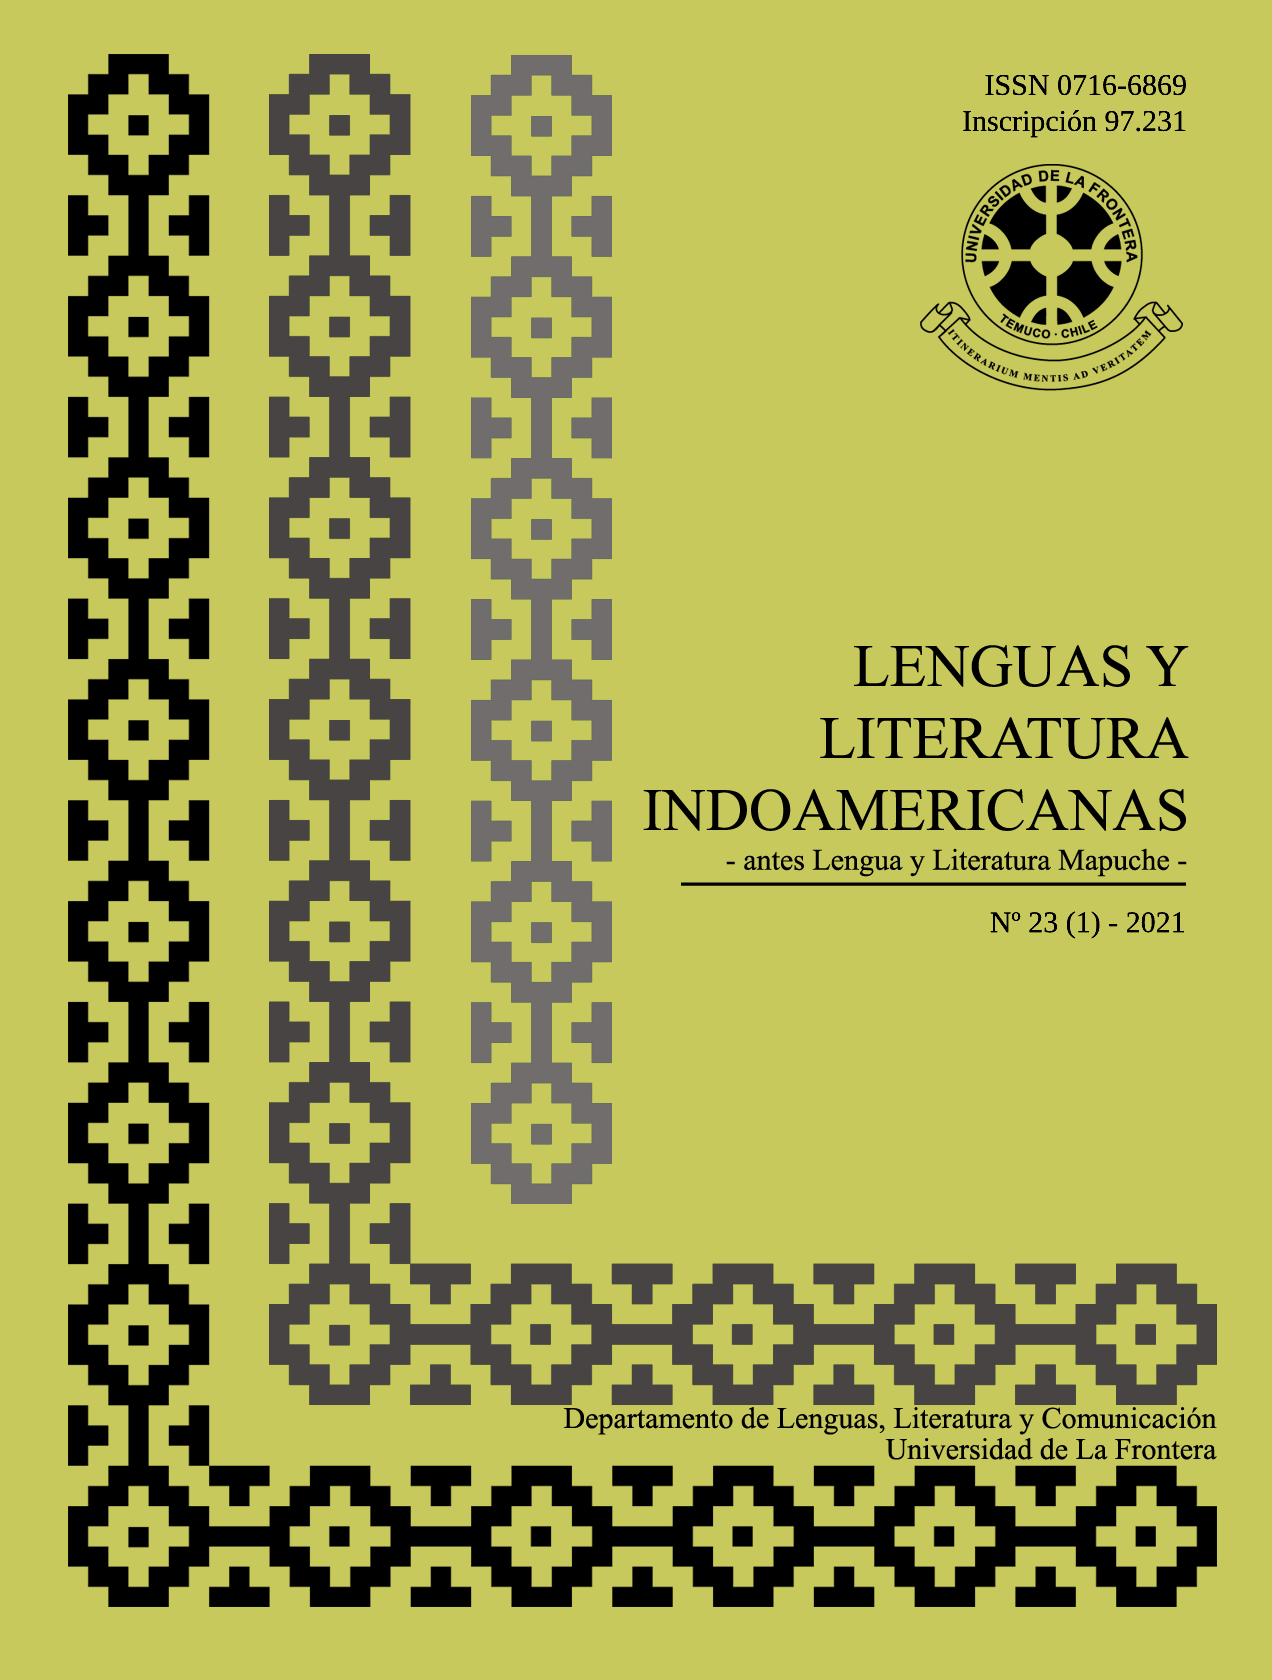 					Ver Vol. 23 Núm. 1 (2021): Revista de Lenguas y Literatura Indoamericanas (RLLI)
				